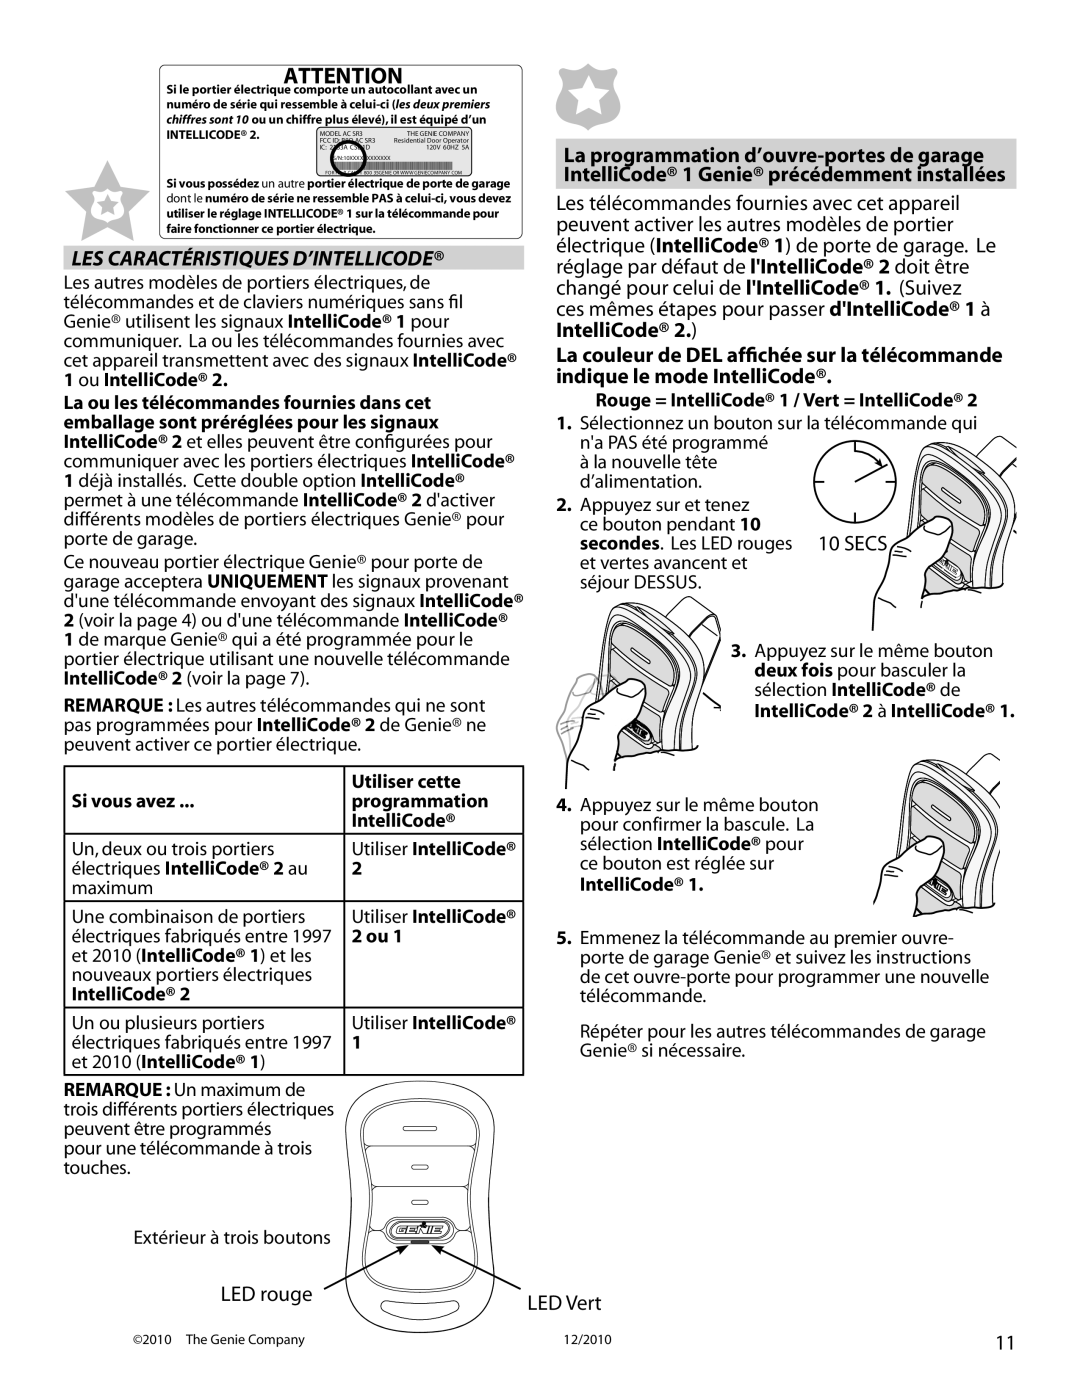 Genie 4042 manual Les Caractéristiques D’Intellicode, LED rouge 